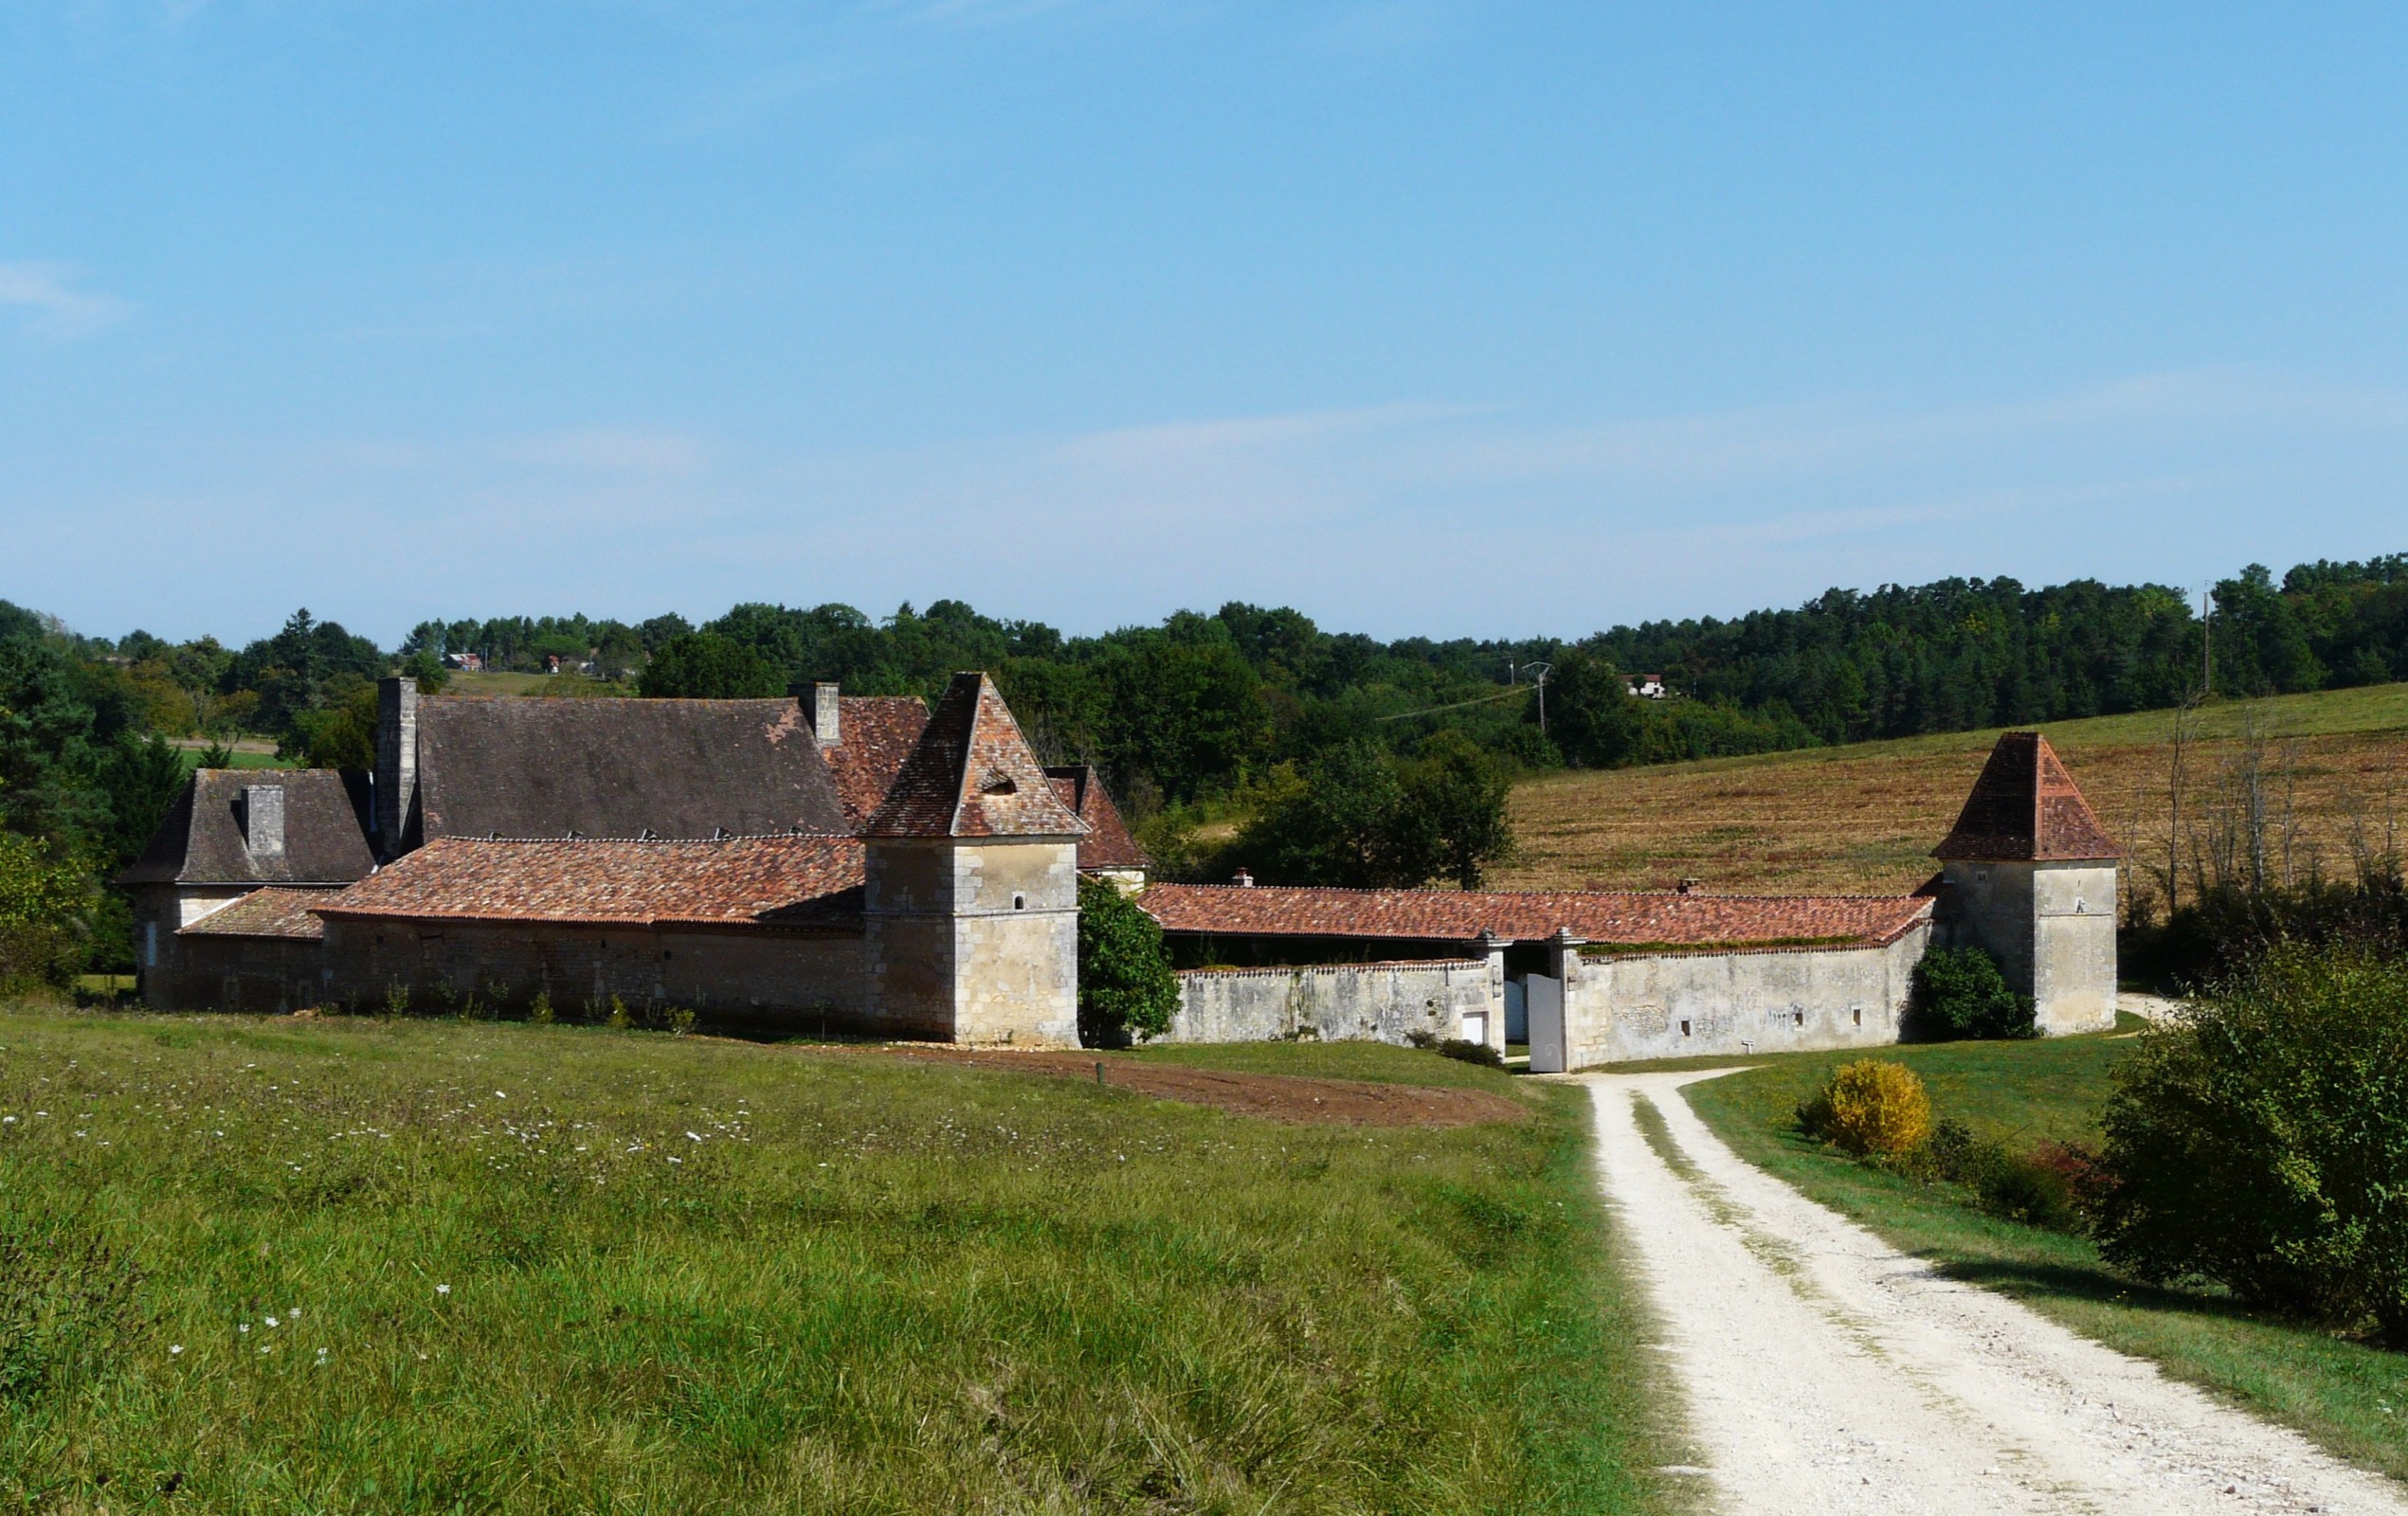 Le gite est une dépendance du manoir des Pautys, une vielle maison fortifié du XVème siècle.